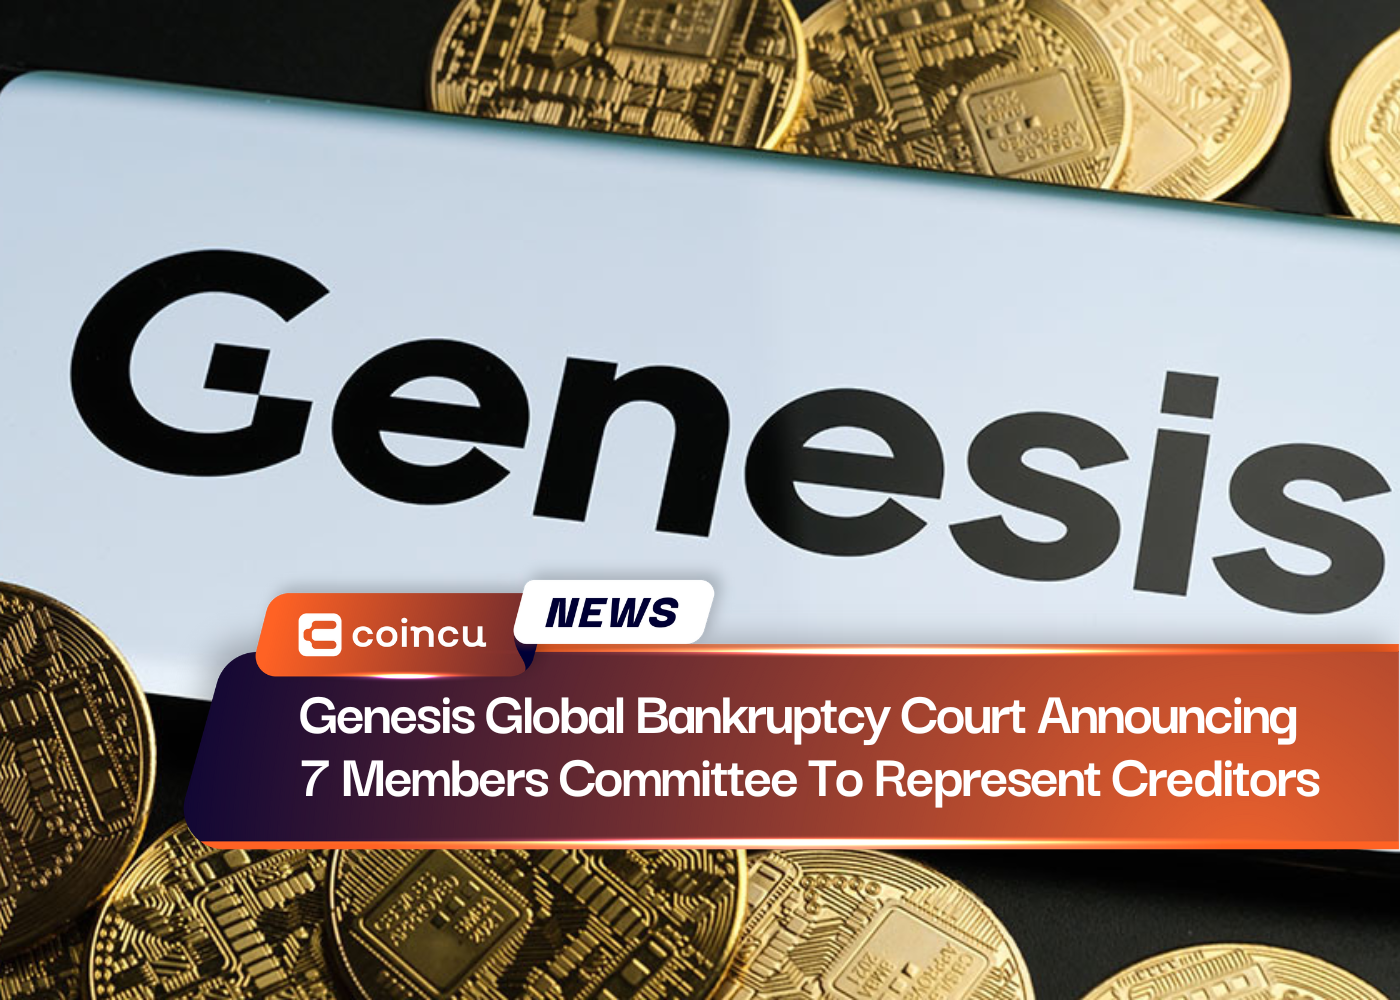 Genesis Global Bankruptcy Court annonce la composition d'un comité de 7 membres pour représenter les créanciers